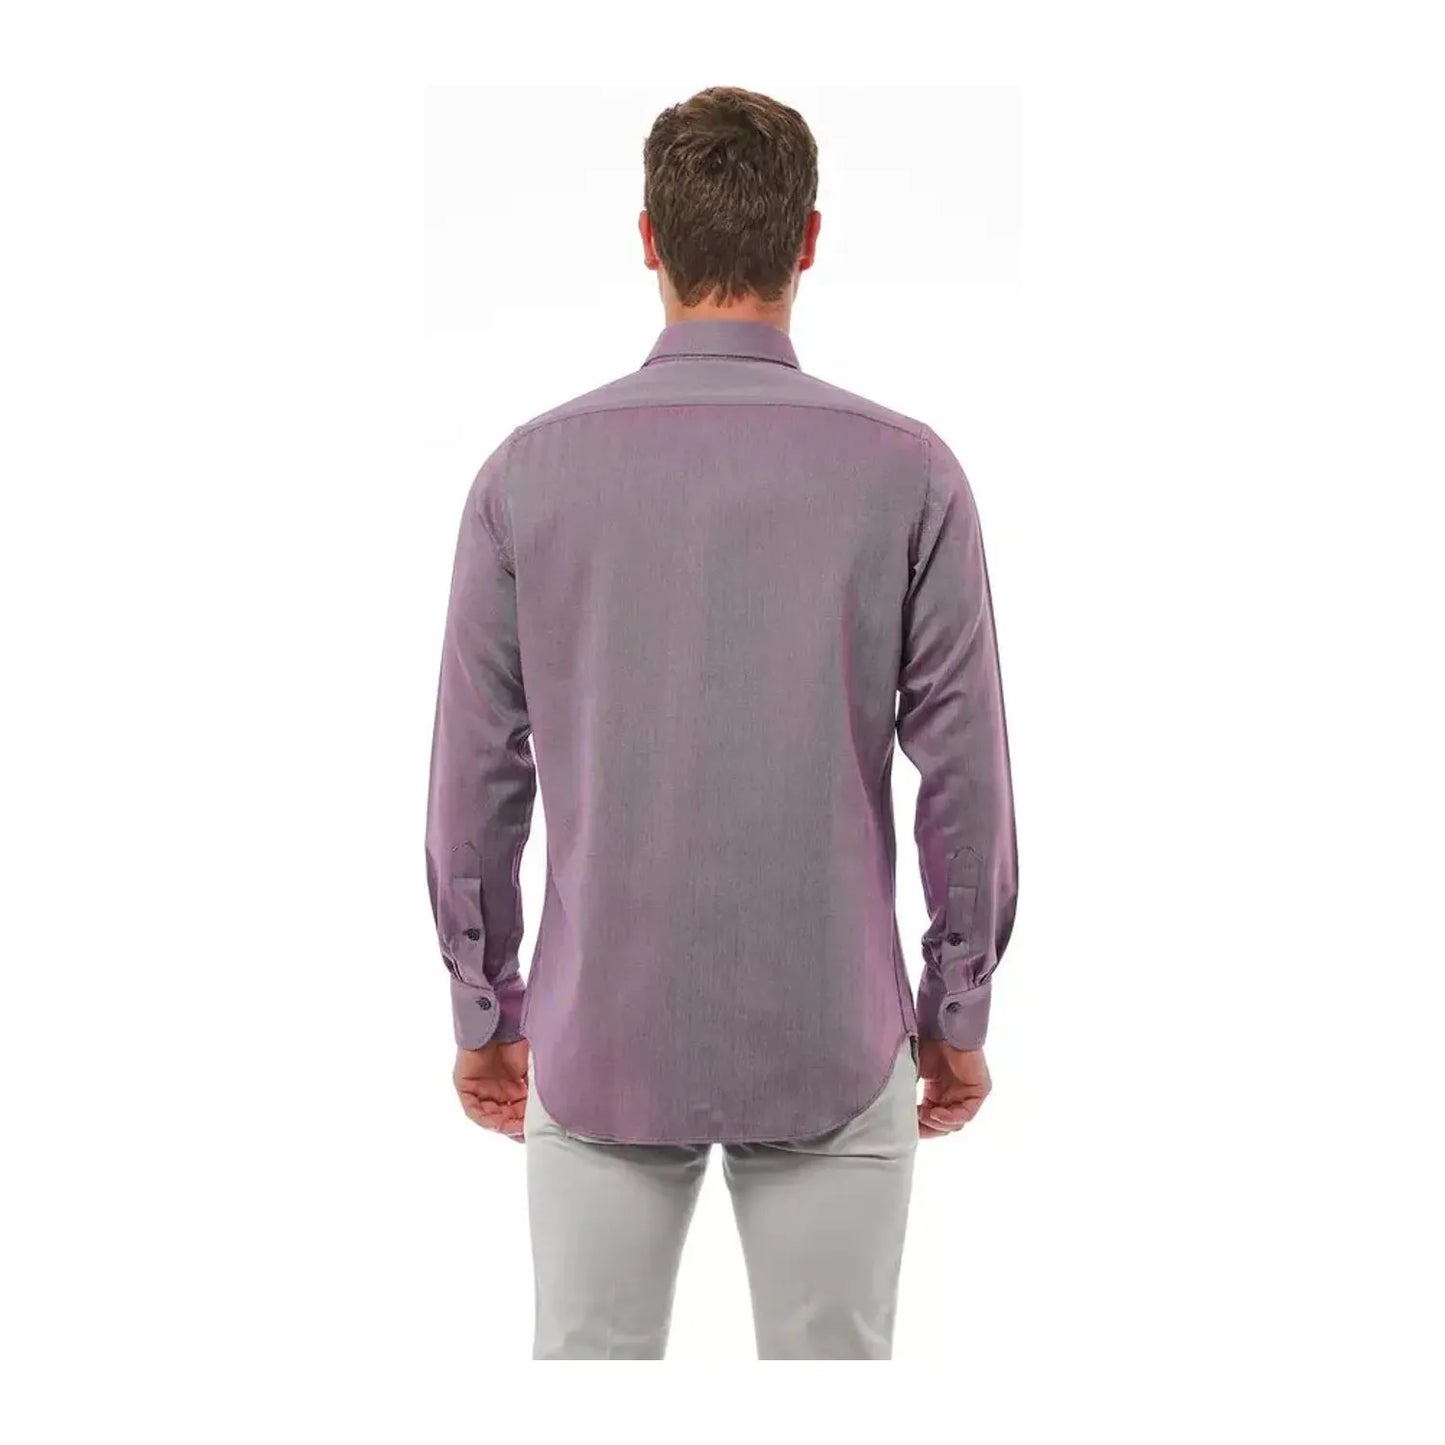 Bagutta Elegant Burgundy Italian Collar Shirt burgundy-cotton-shirt